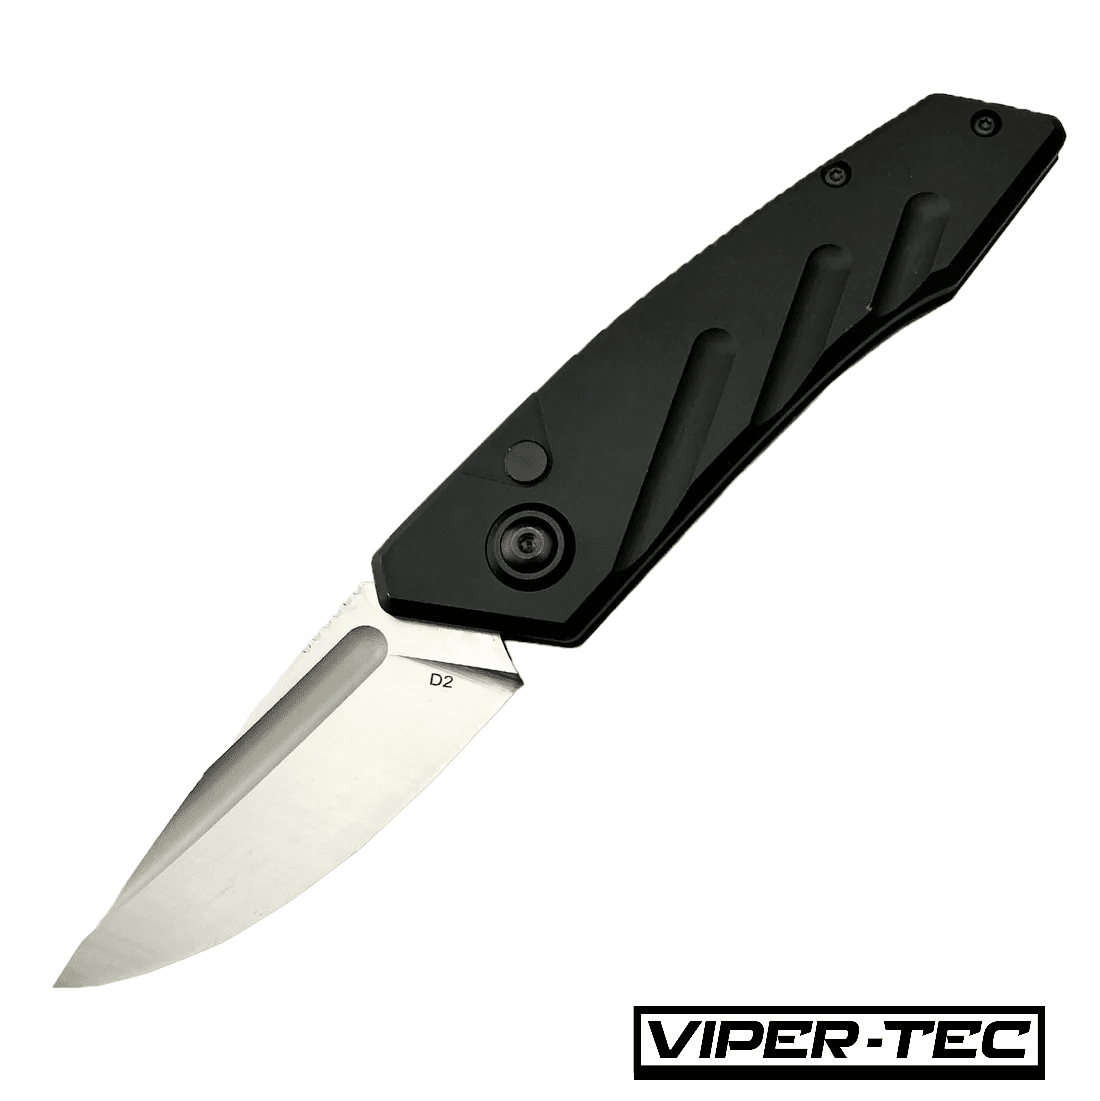 Viper Tec Initiate 1 knife